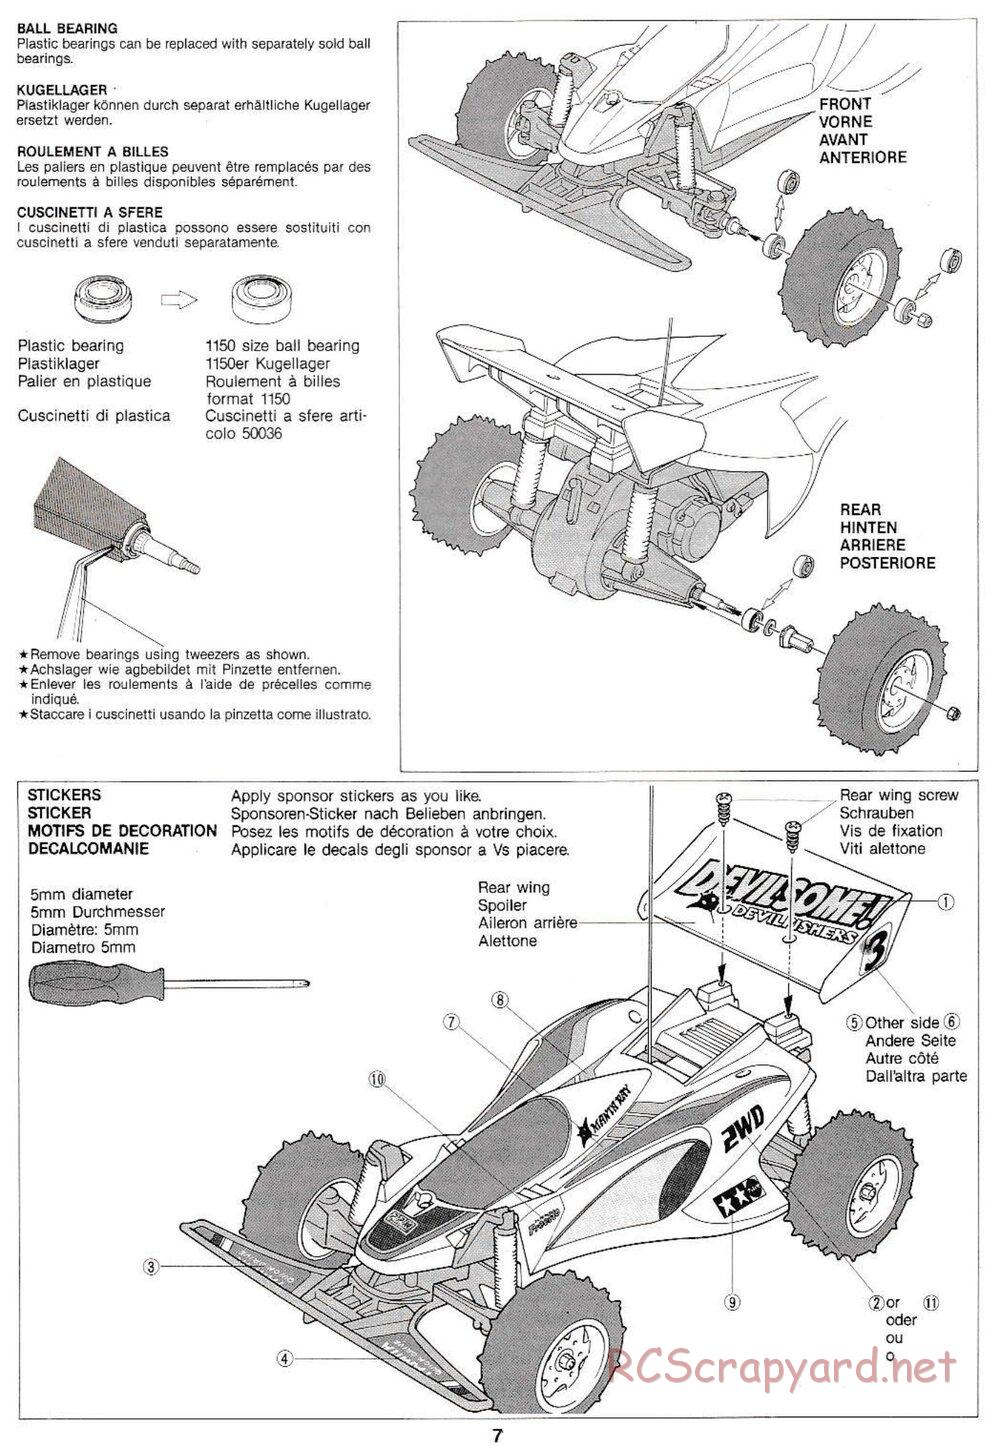 Tamiya - Manta Ray QD Chassis - Manual - Page 7